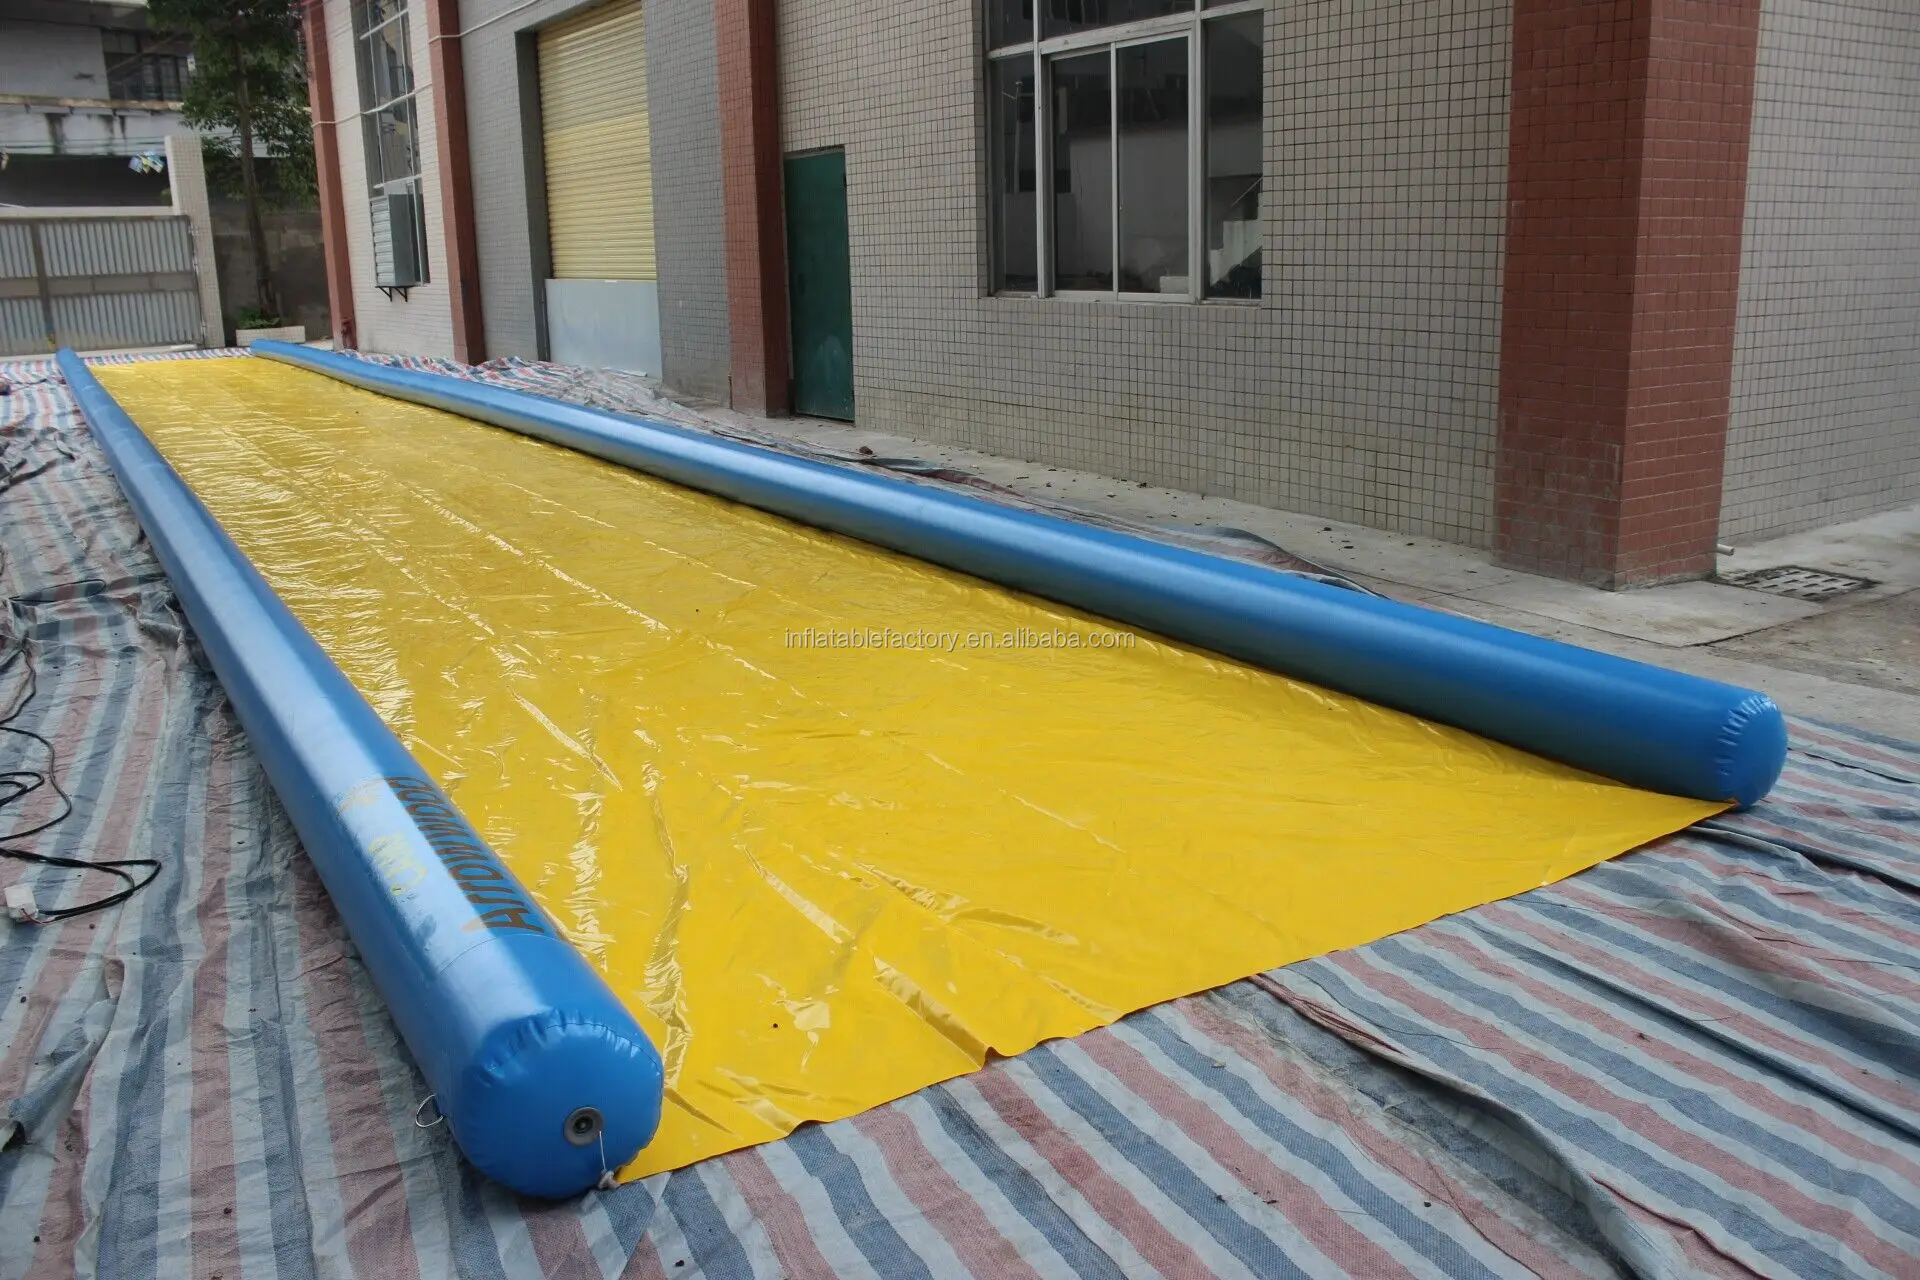 Inflatable water slip n city slide for summer